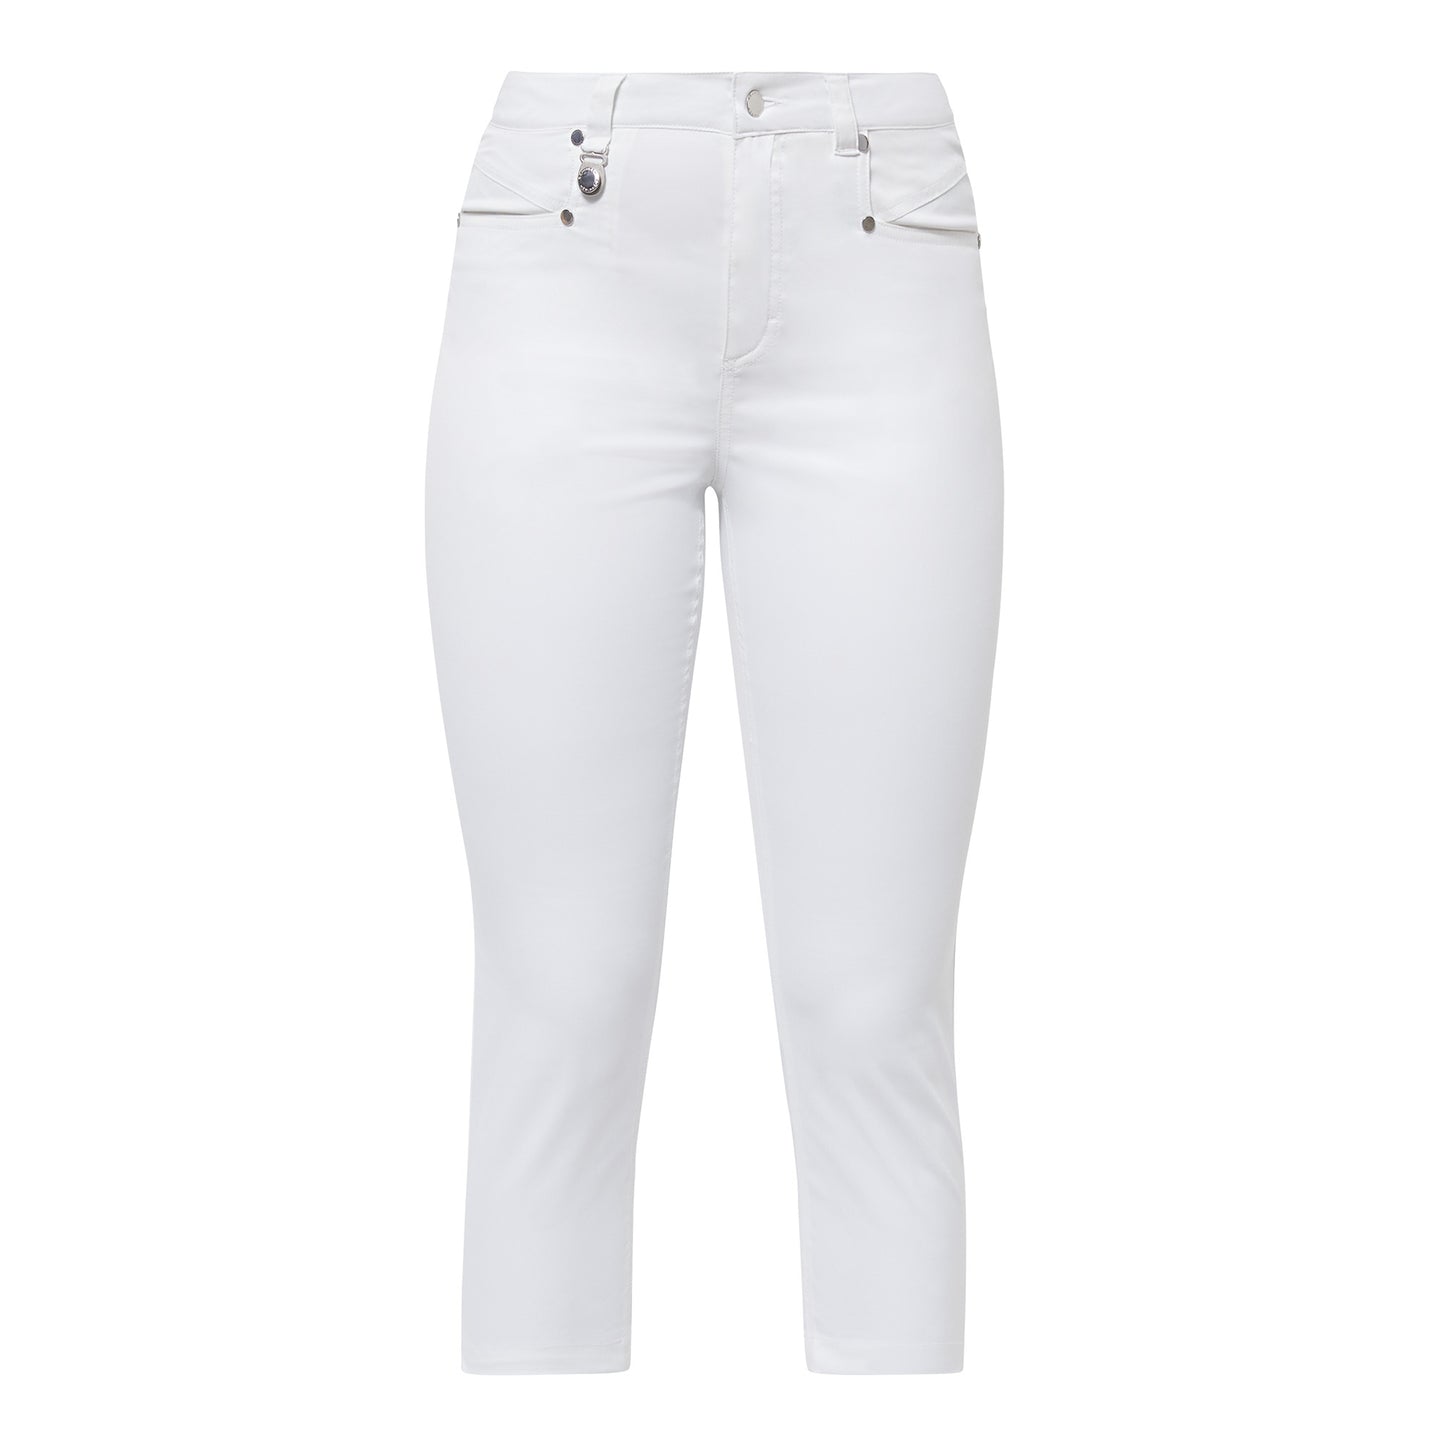 Rohnisch Ladies Chic Slim-Fit Capris in White